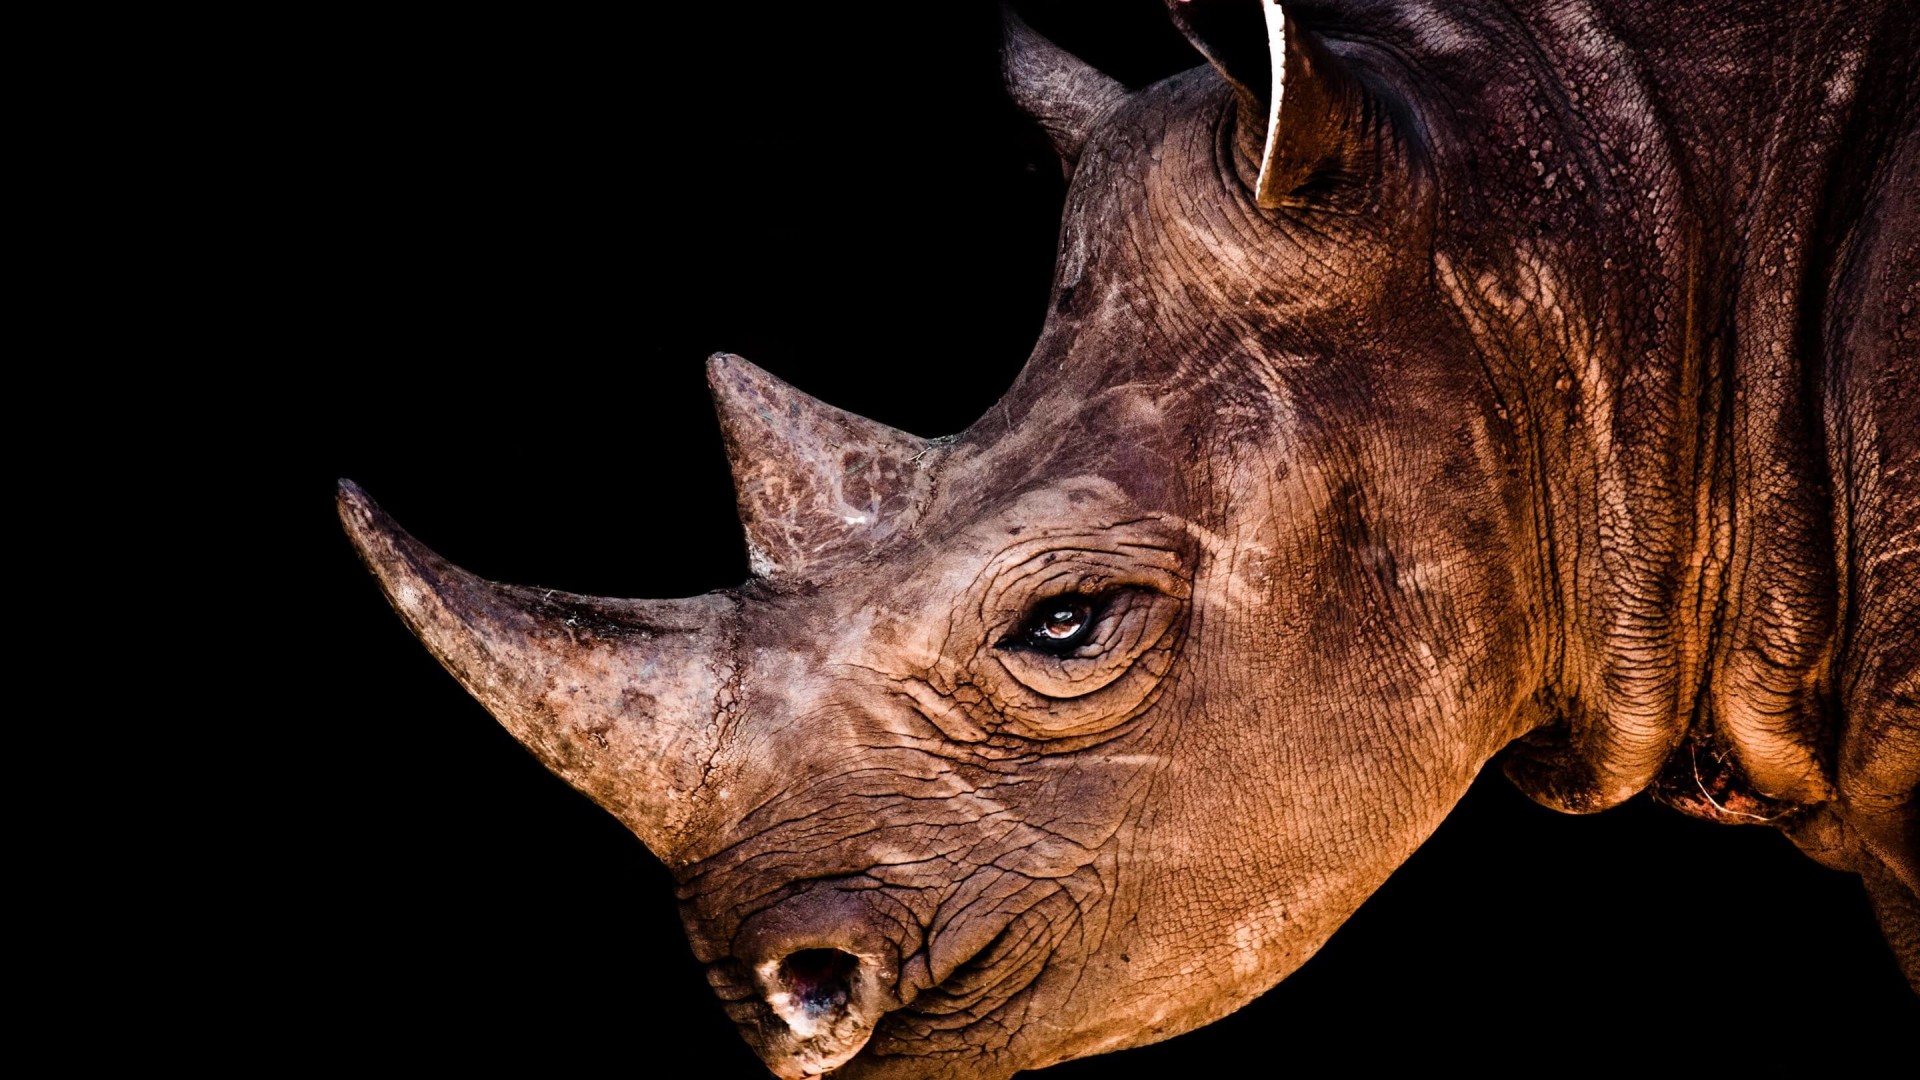 Rhinoceros Portrait Wallpaper for Desktop 1920x1080